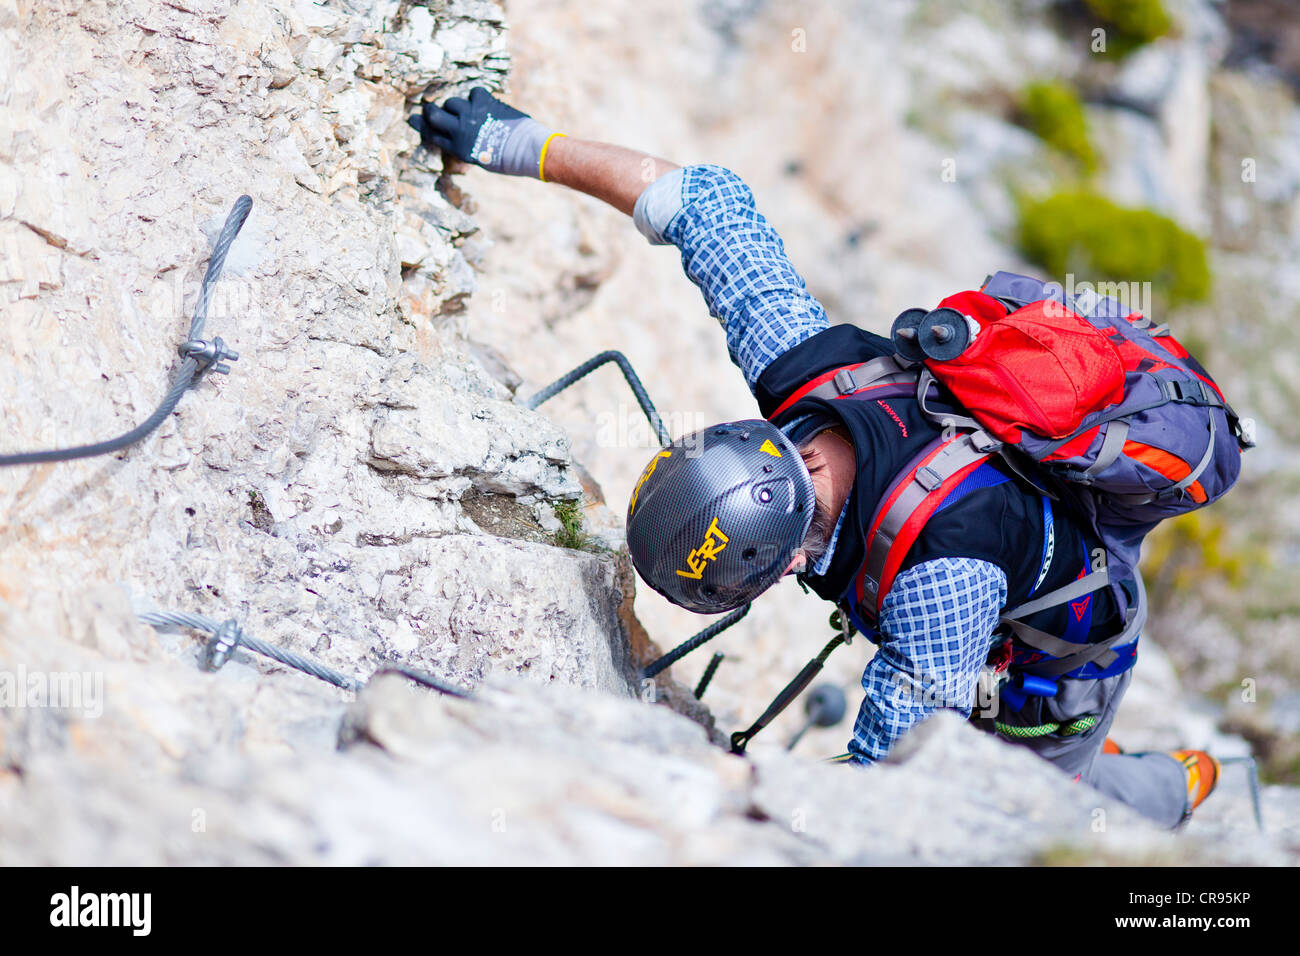 Climbers on the Stevia fixed rope route, Langental valley, Val Gardena valley, Dolomites, province of Bolzano-Bozen, Italy Stock Photo